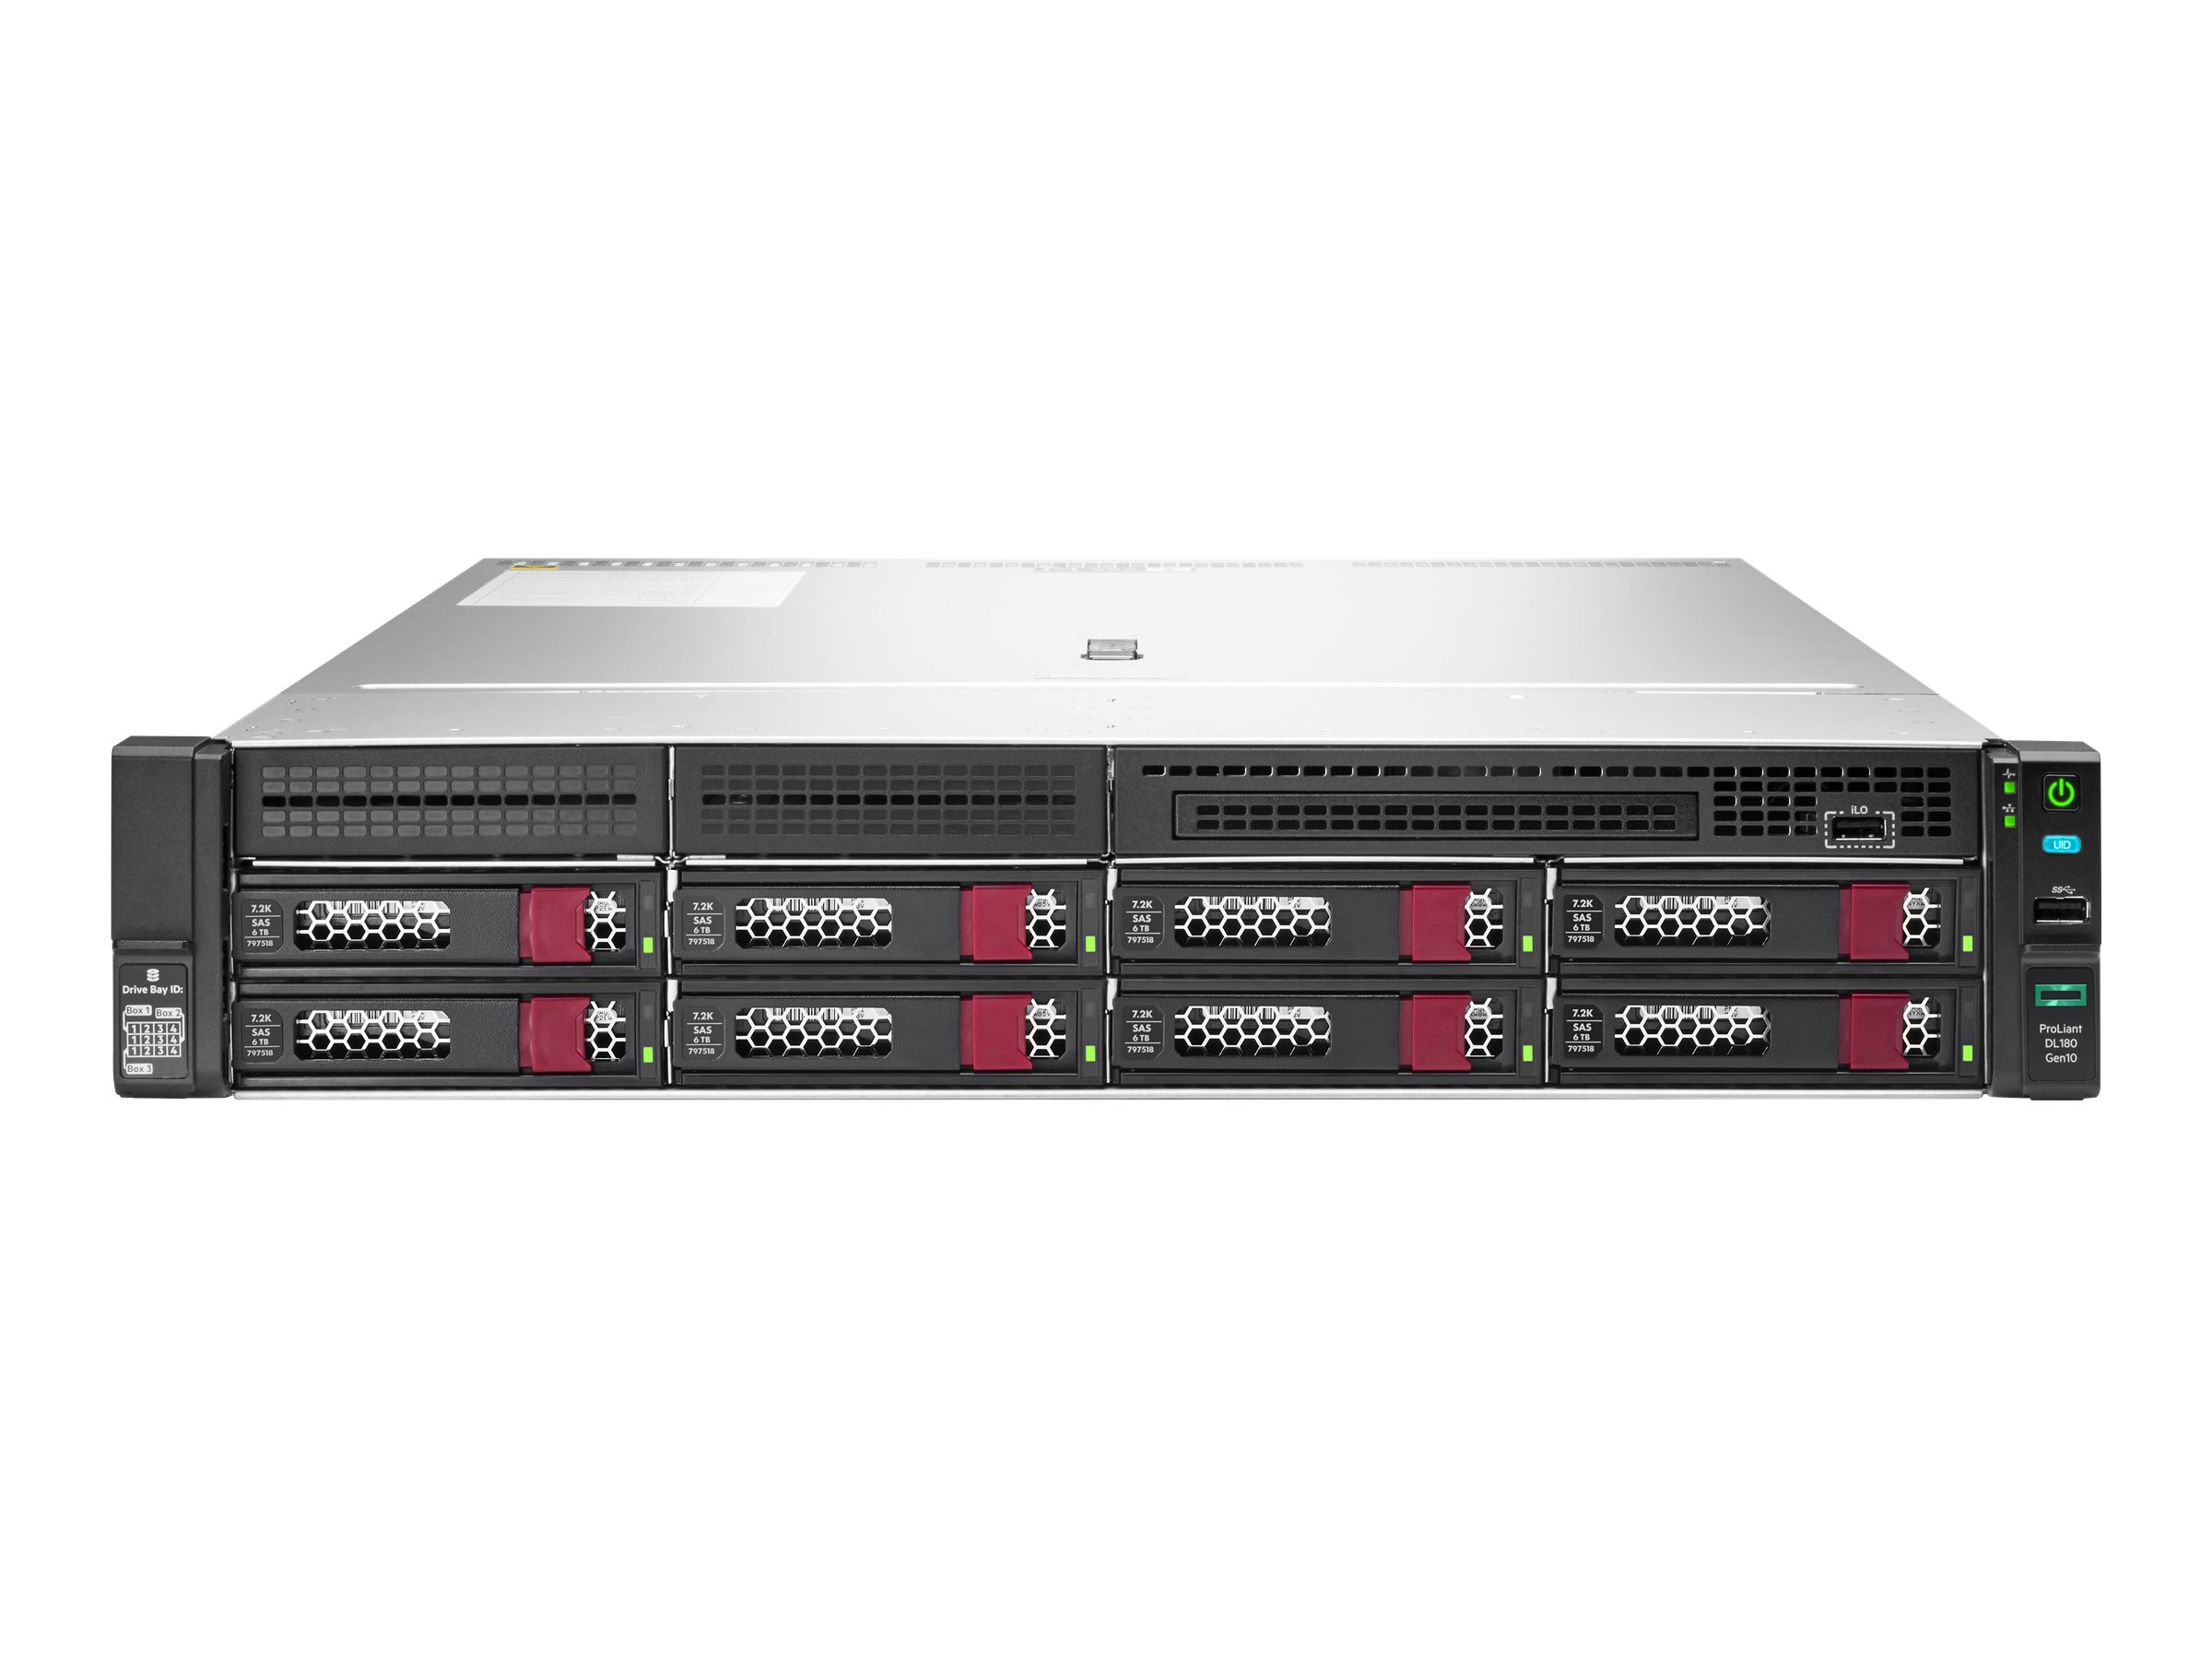 HPE ProLiant DL180 Gen10 - Serveur - Montable sur rack - 2U - 2 voies - pas de processeur - RAM 0 Go - hot-swap 3.5" baie(s) - aucun disque dur - Gigabit Ethernet - moniteur : aucun - CTO - 879515-B21 - Serveurs rack